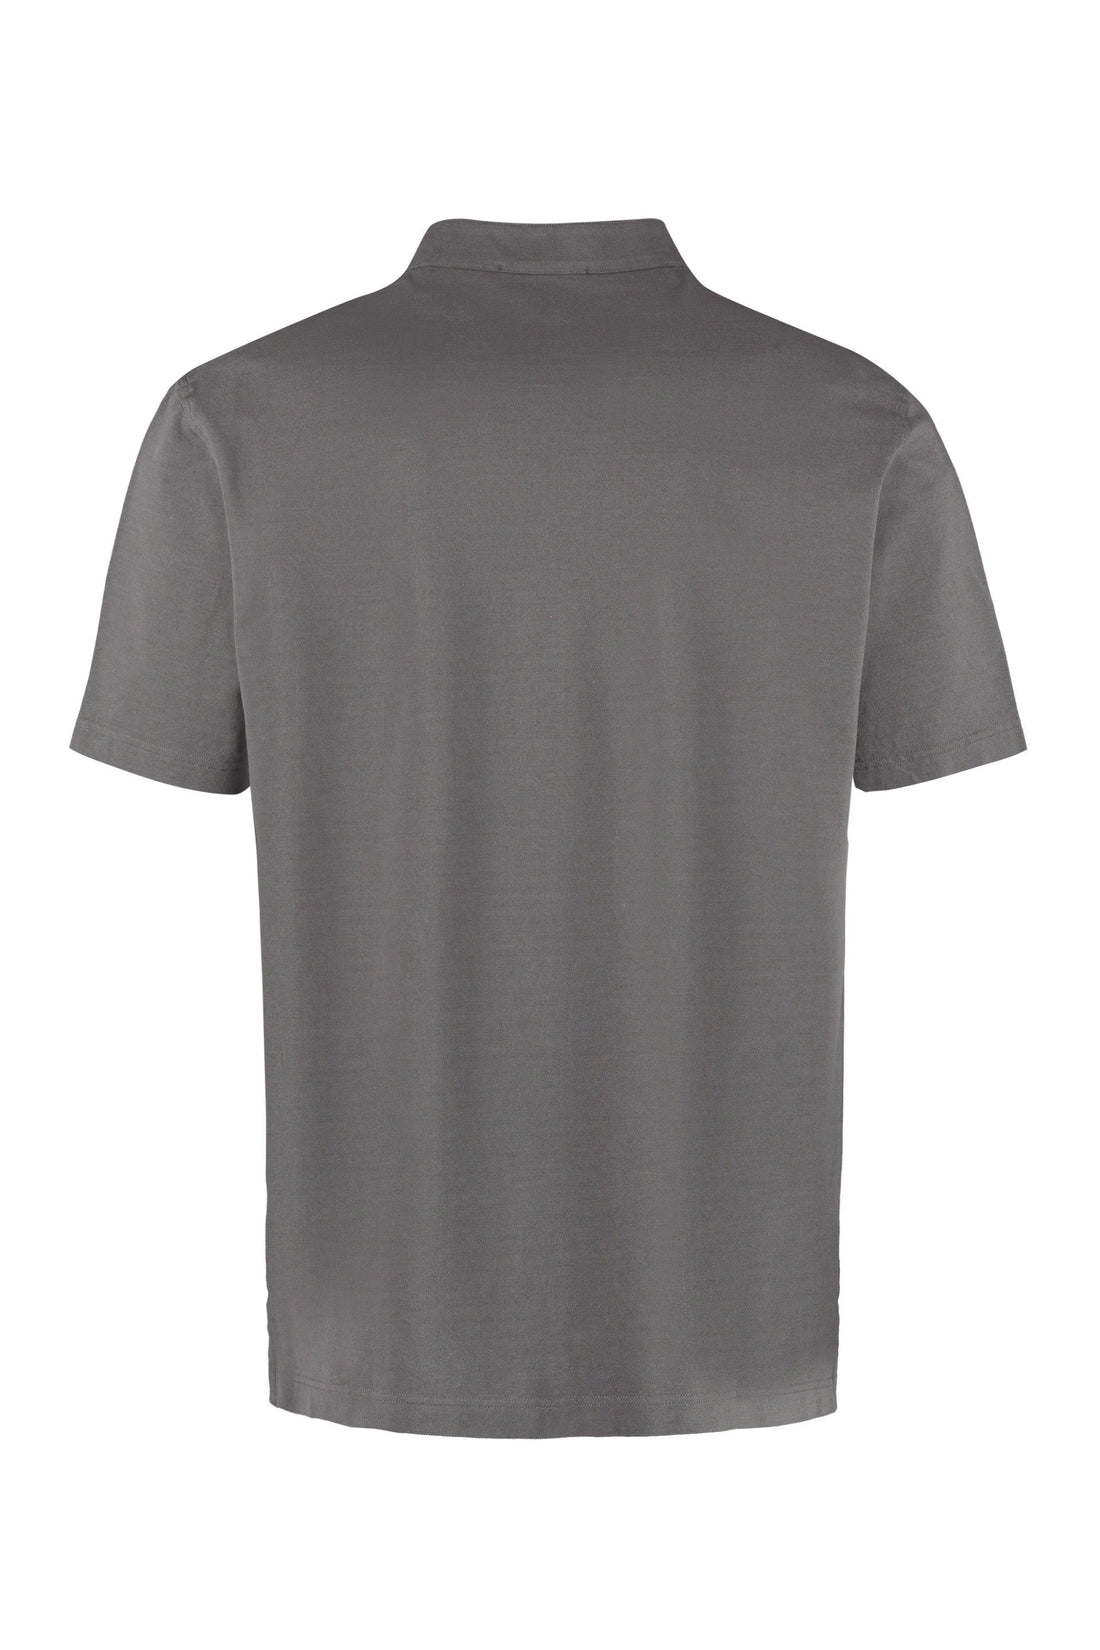 Sease-OUTLET-SALE-Cotton piqué polo shirt-ARCHIVIST